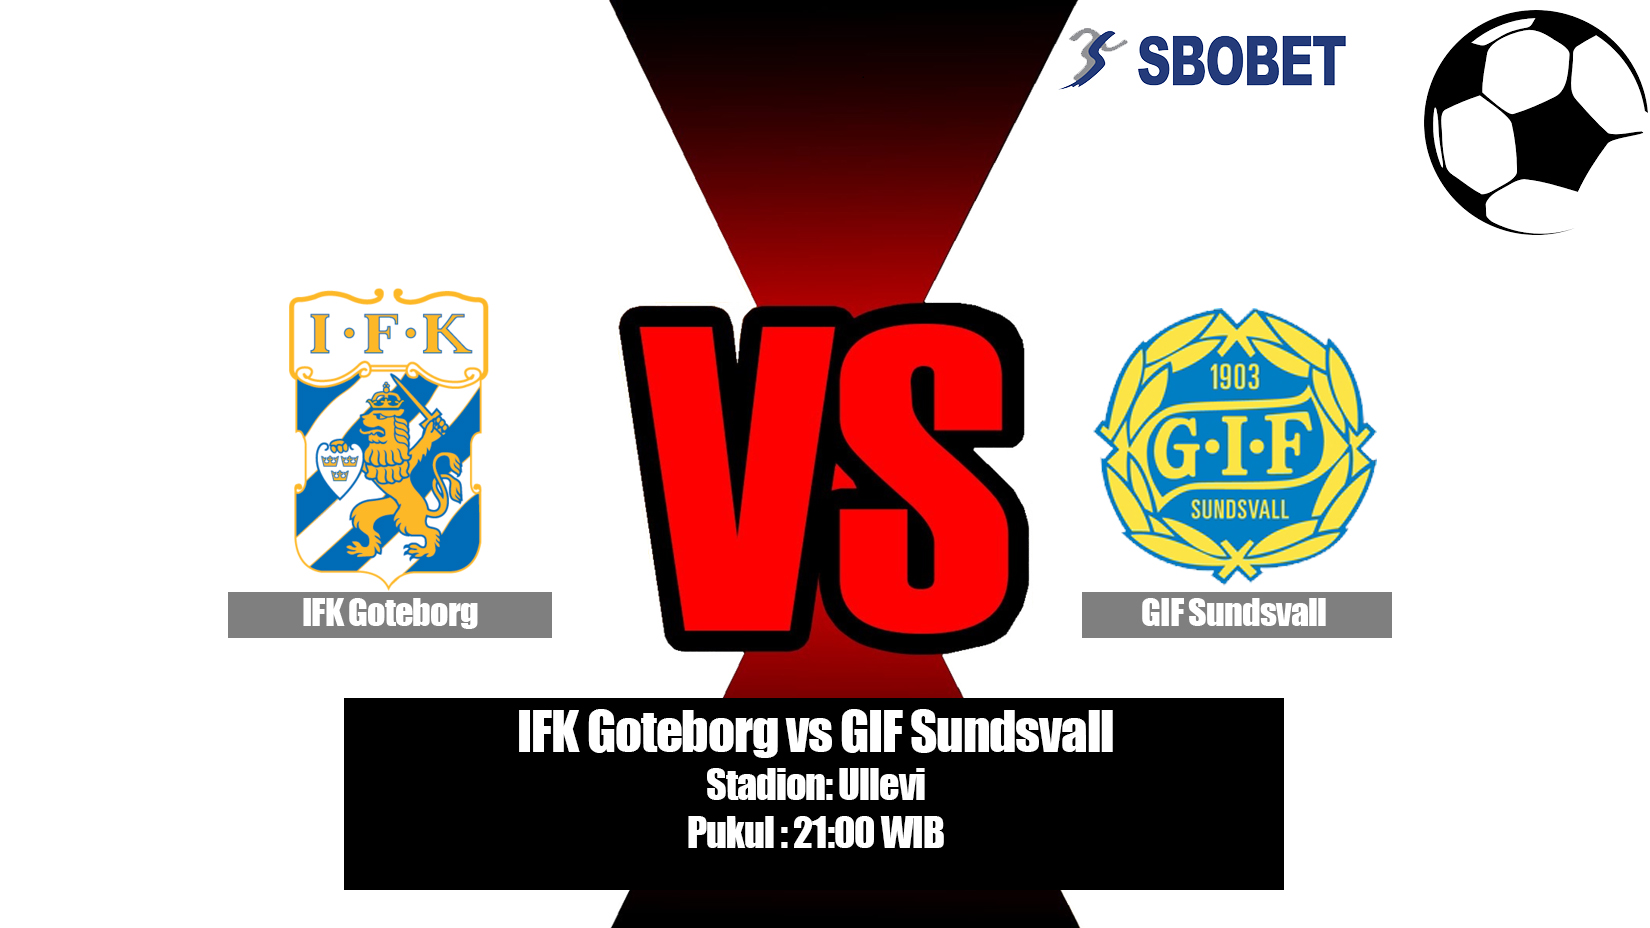 Prediksi Bola IFK Goteborg vs GIF Sundsvall 6 Juli 2019